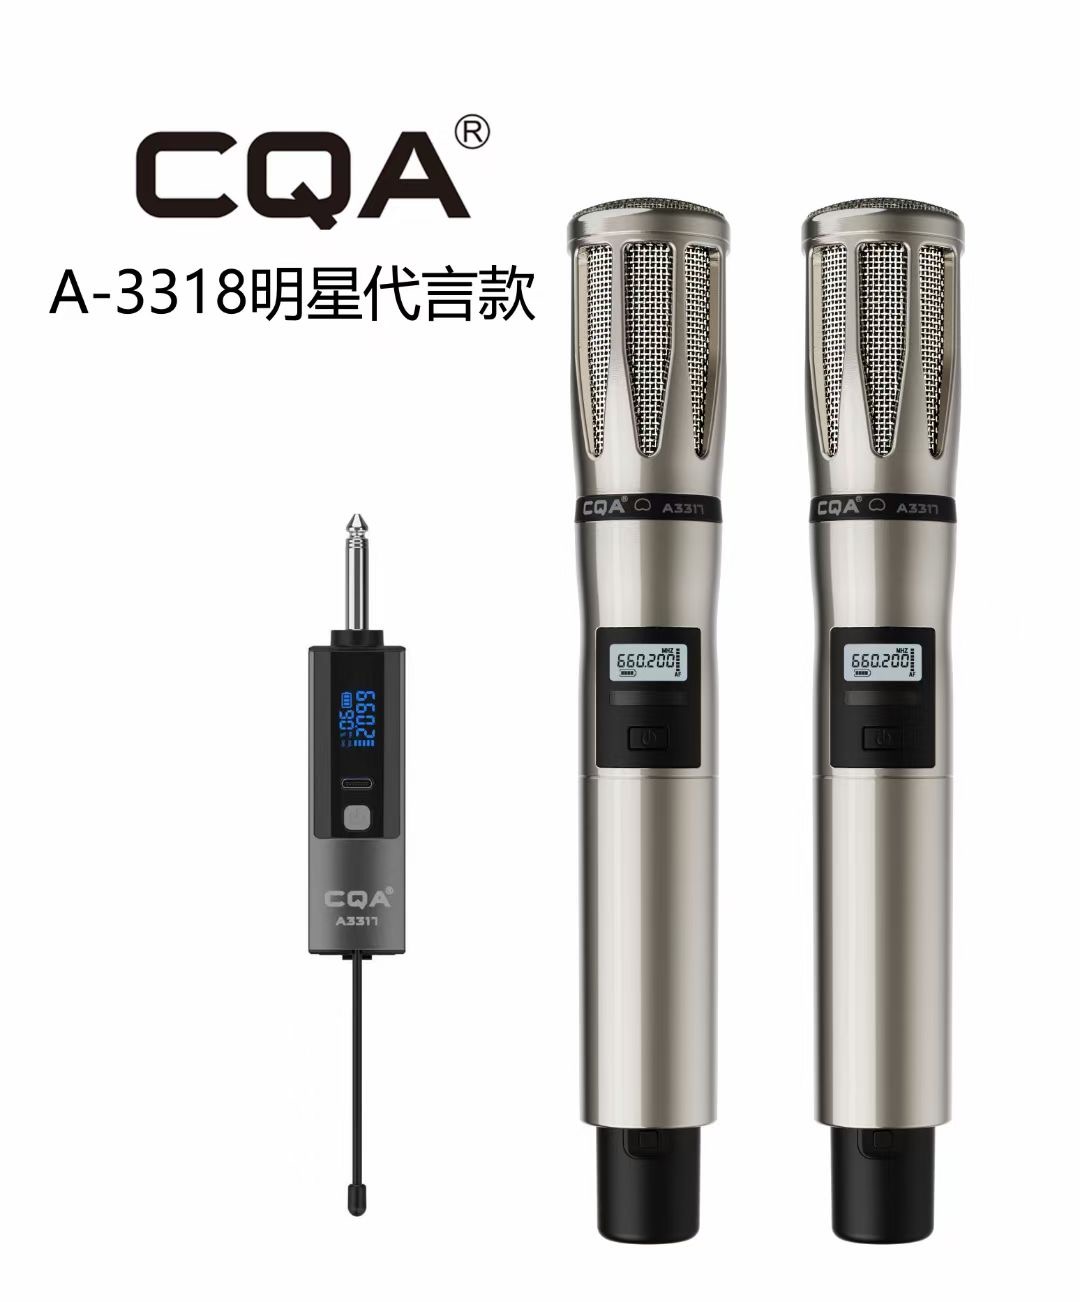 CQA系列无线话筒冷漠代言万能动圈麦主播户外唱歌k歌专业手持话筒 - 图3